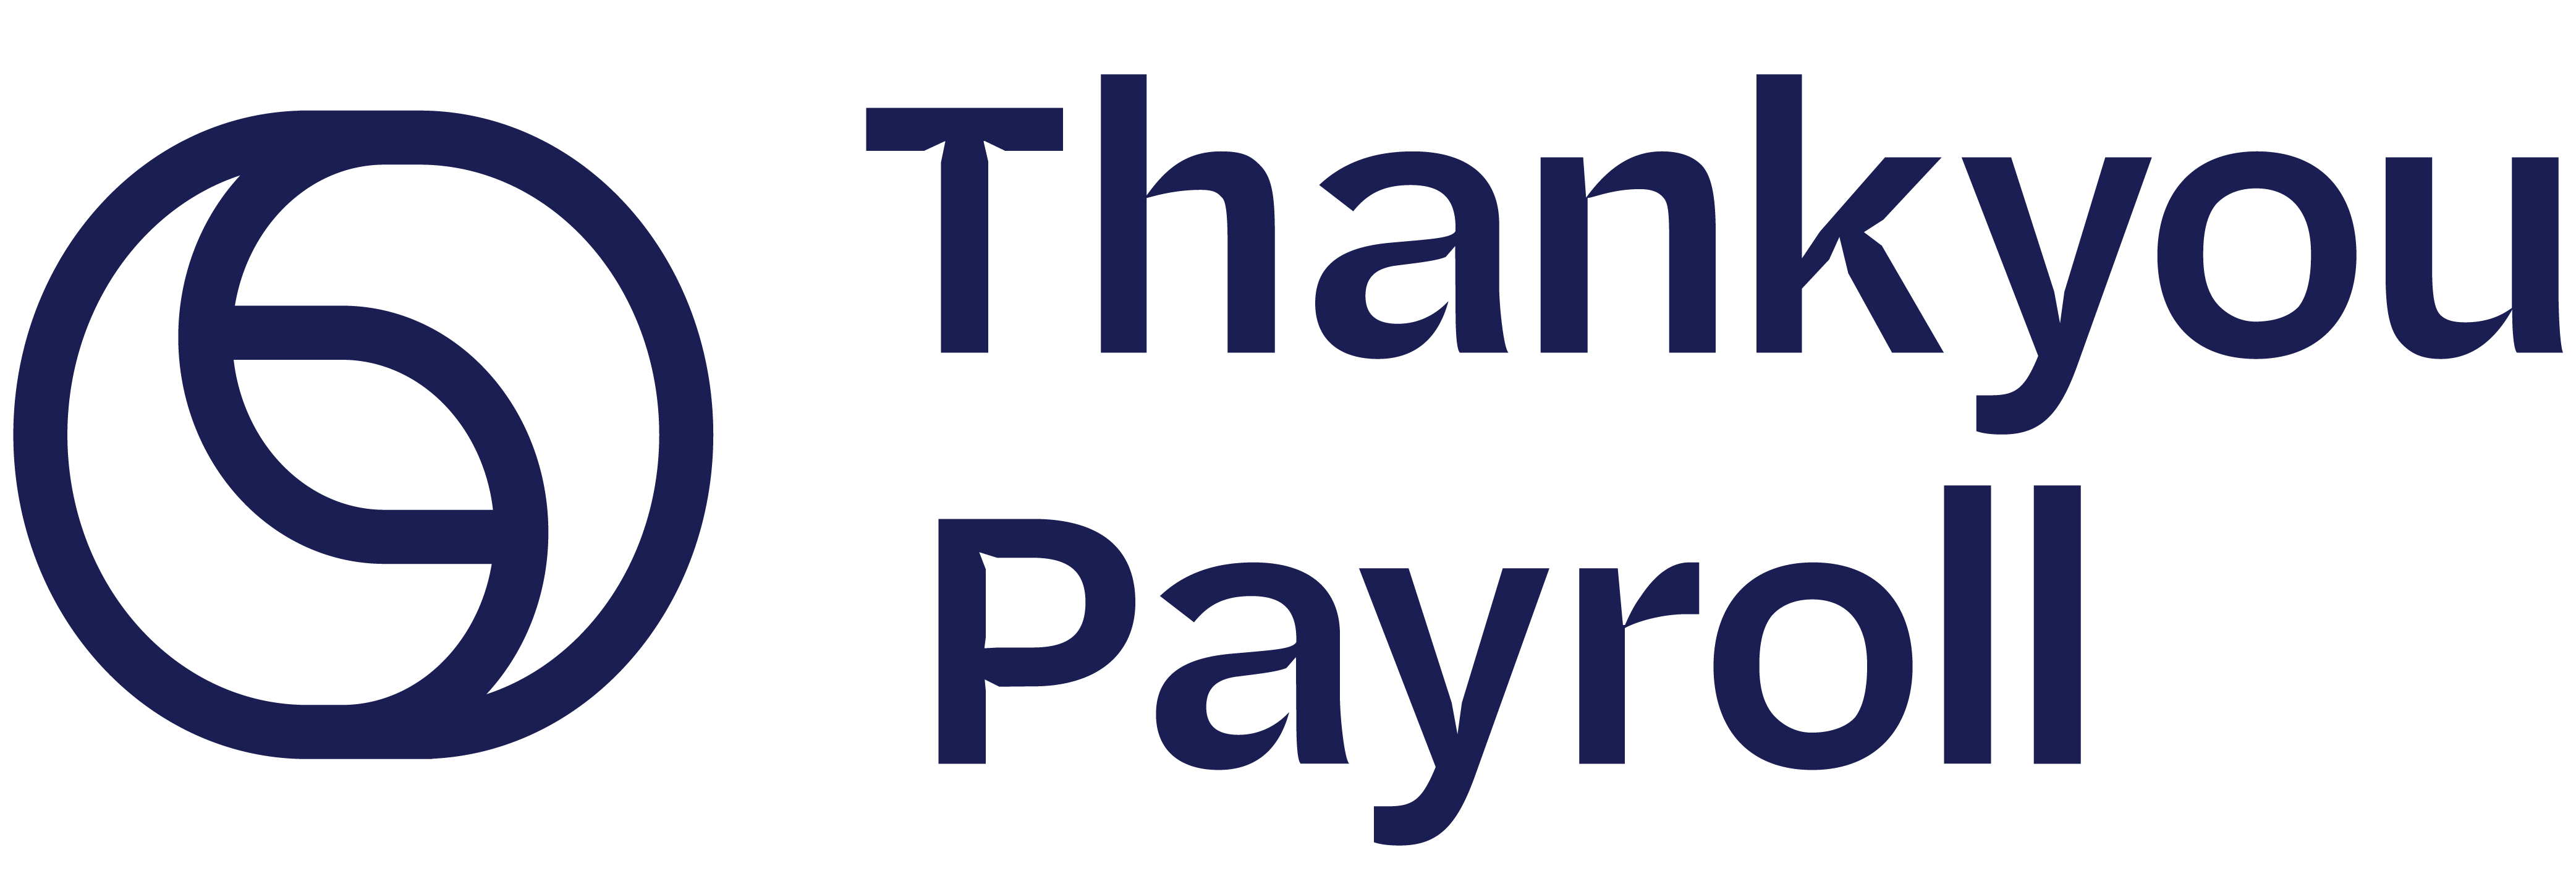 Thankyou Payroll logo